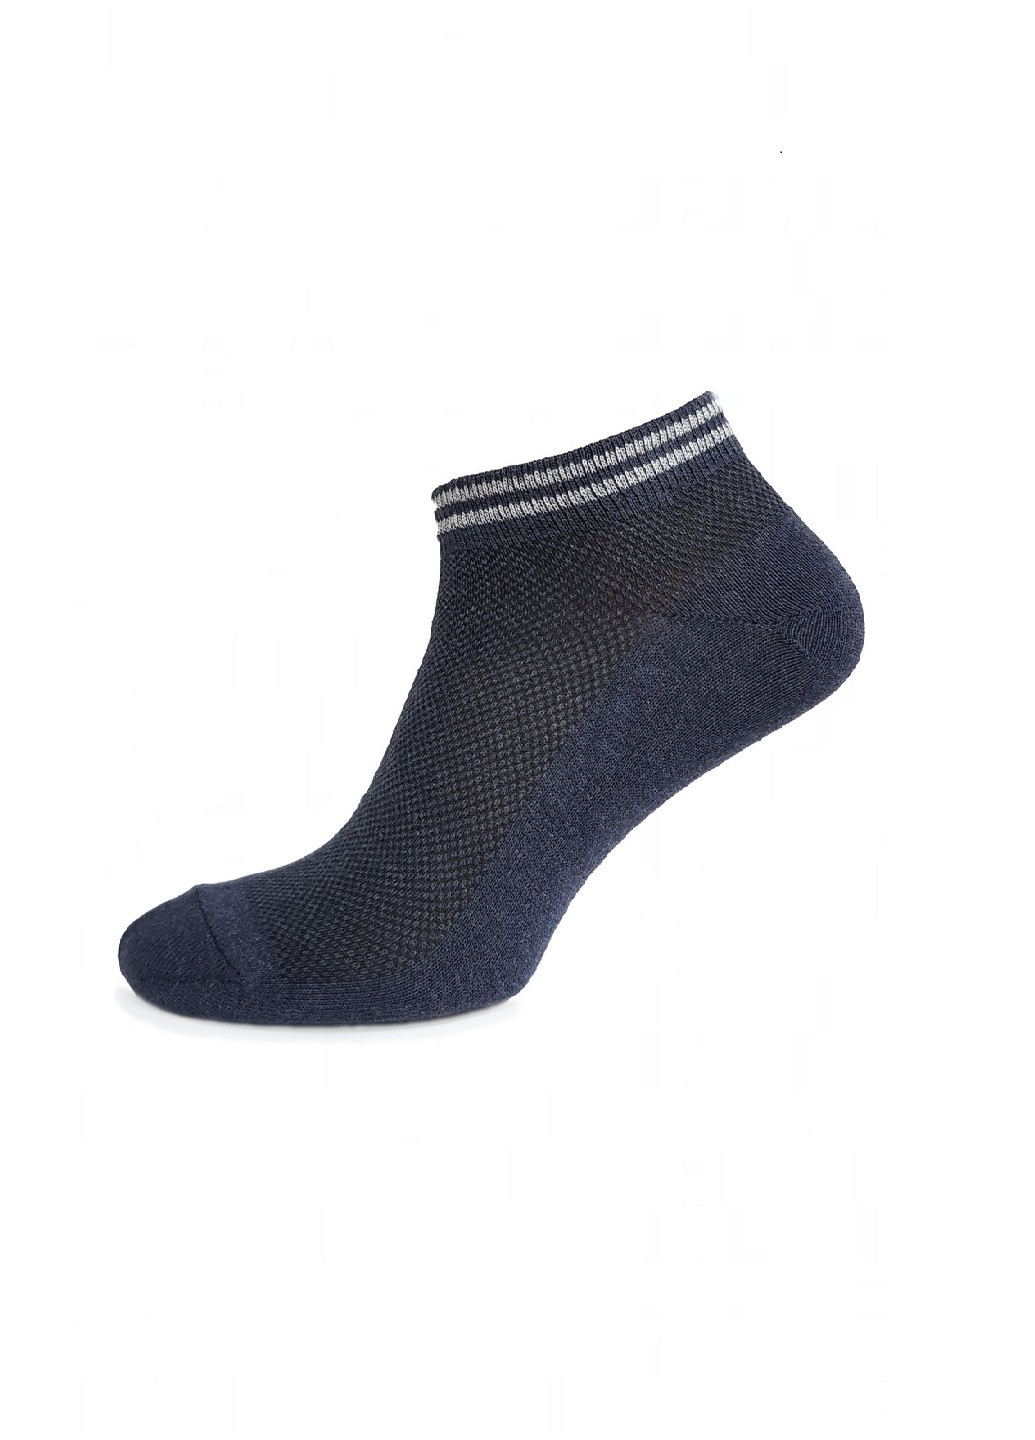 Мужские носки в сетку Nova Sport Line однотонные синие повседневные